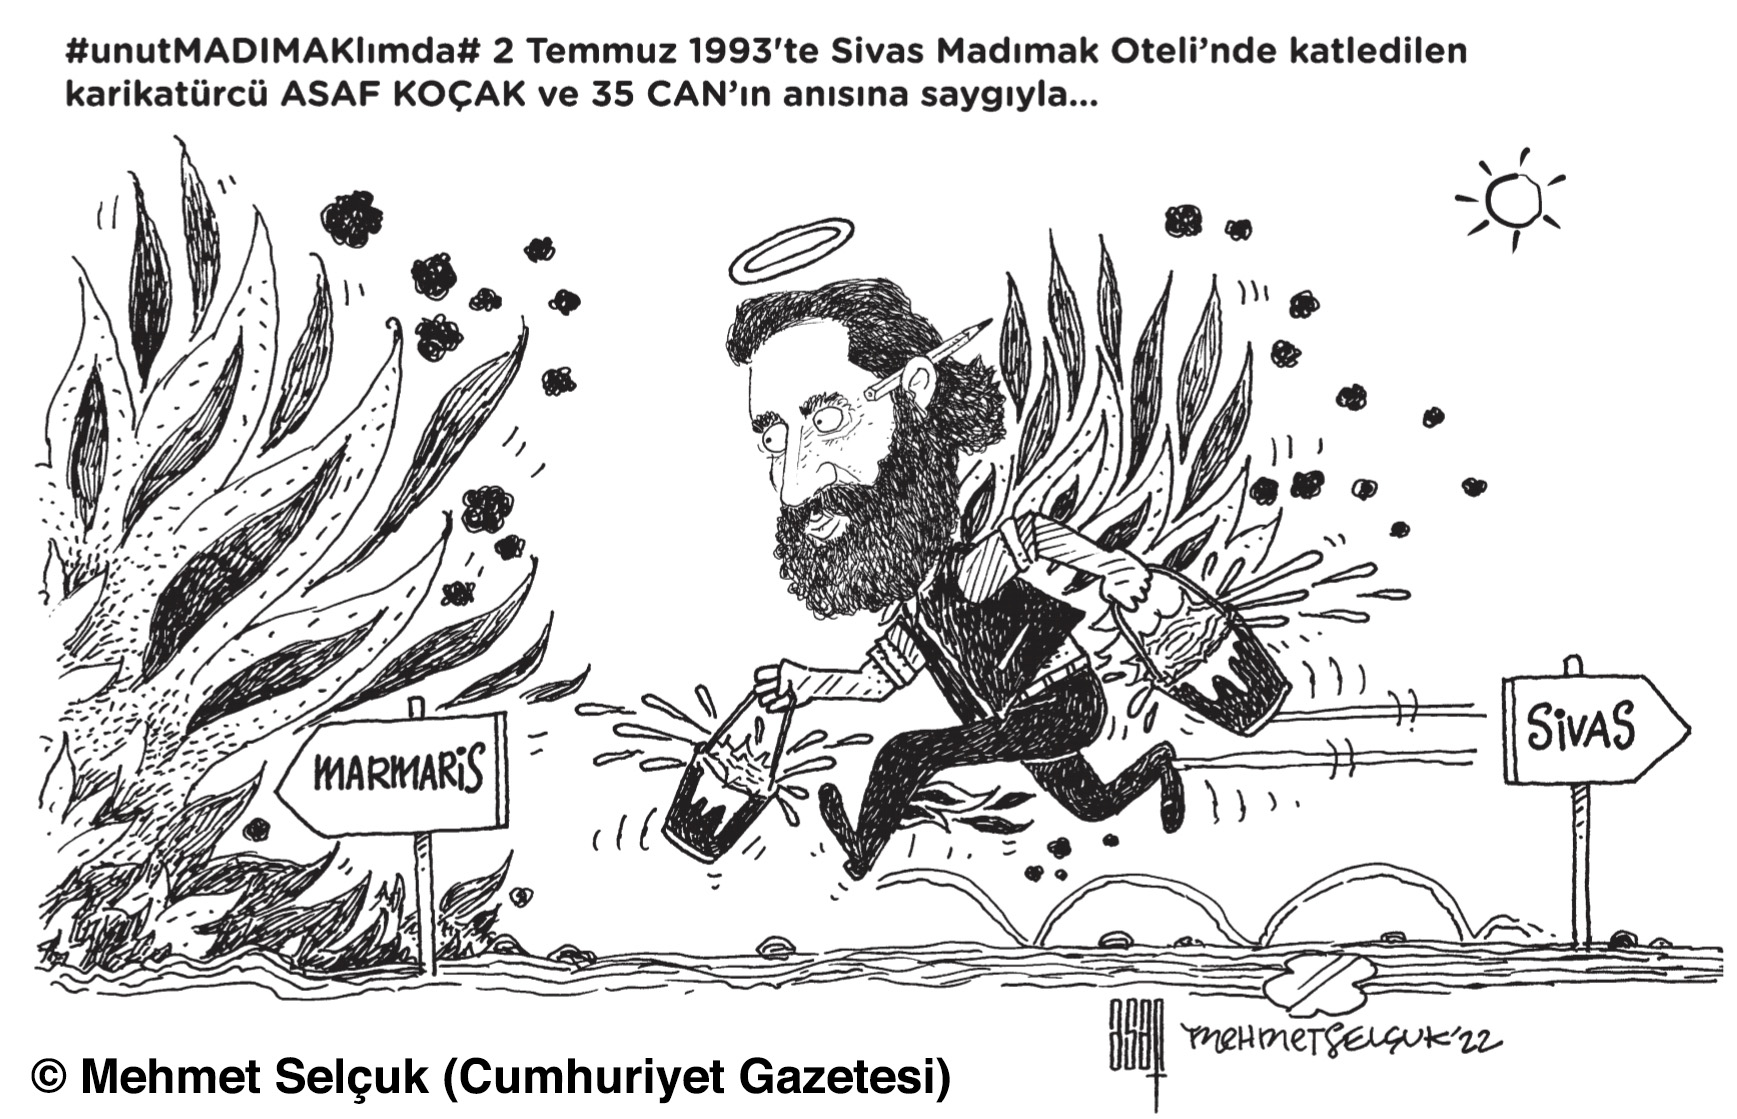 Mehmet Selçuk'un karikatürü